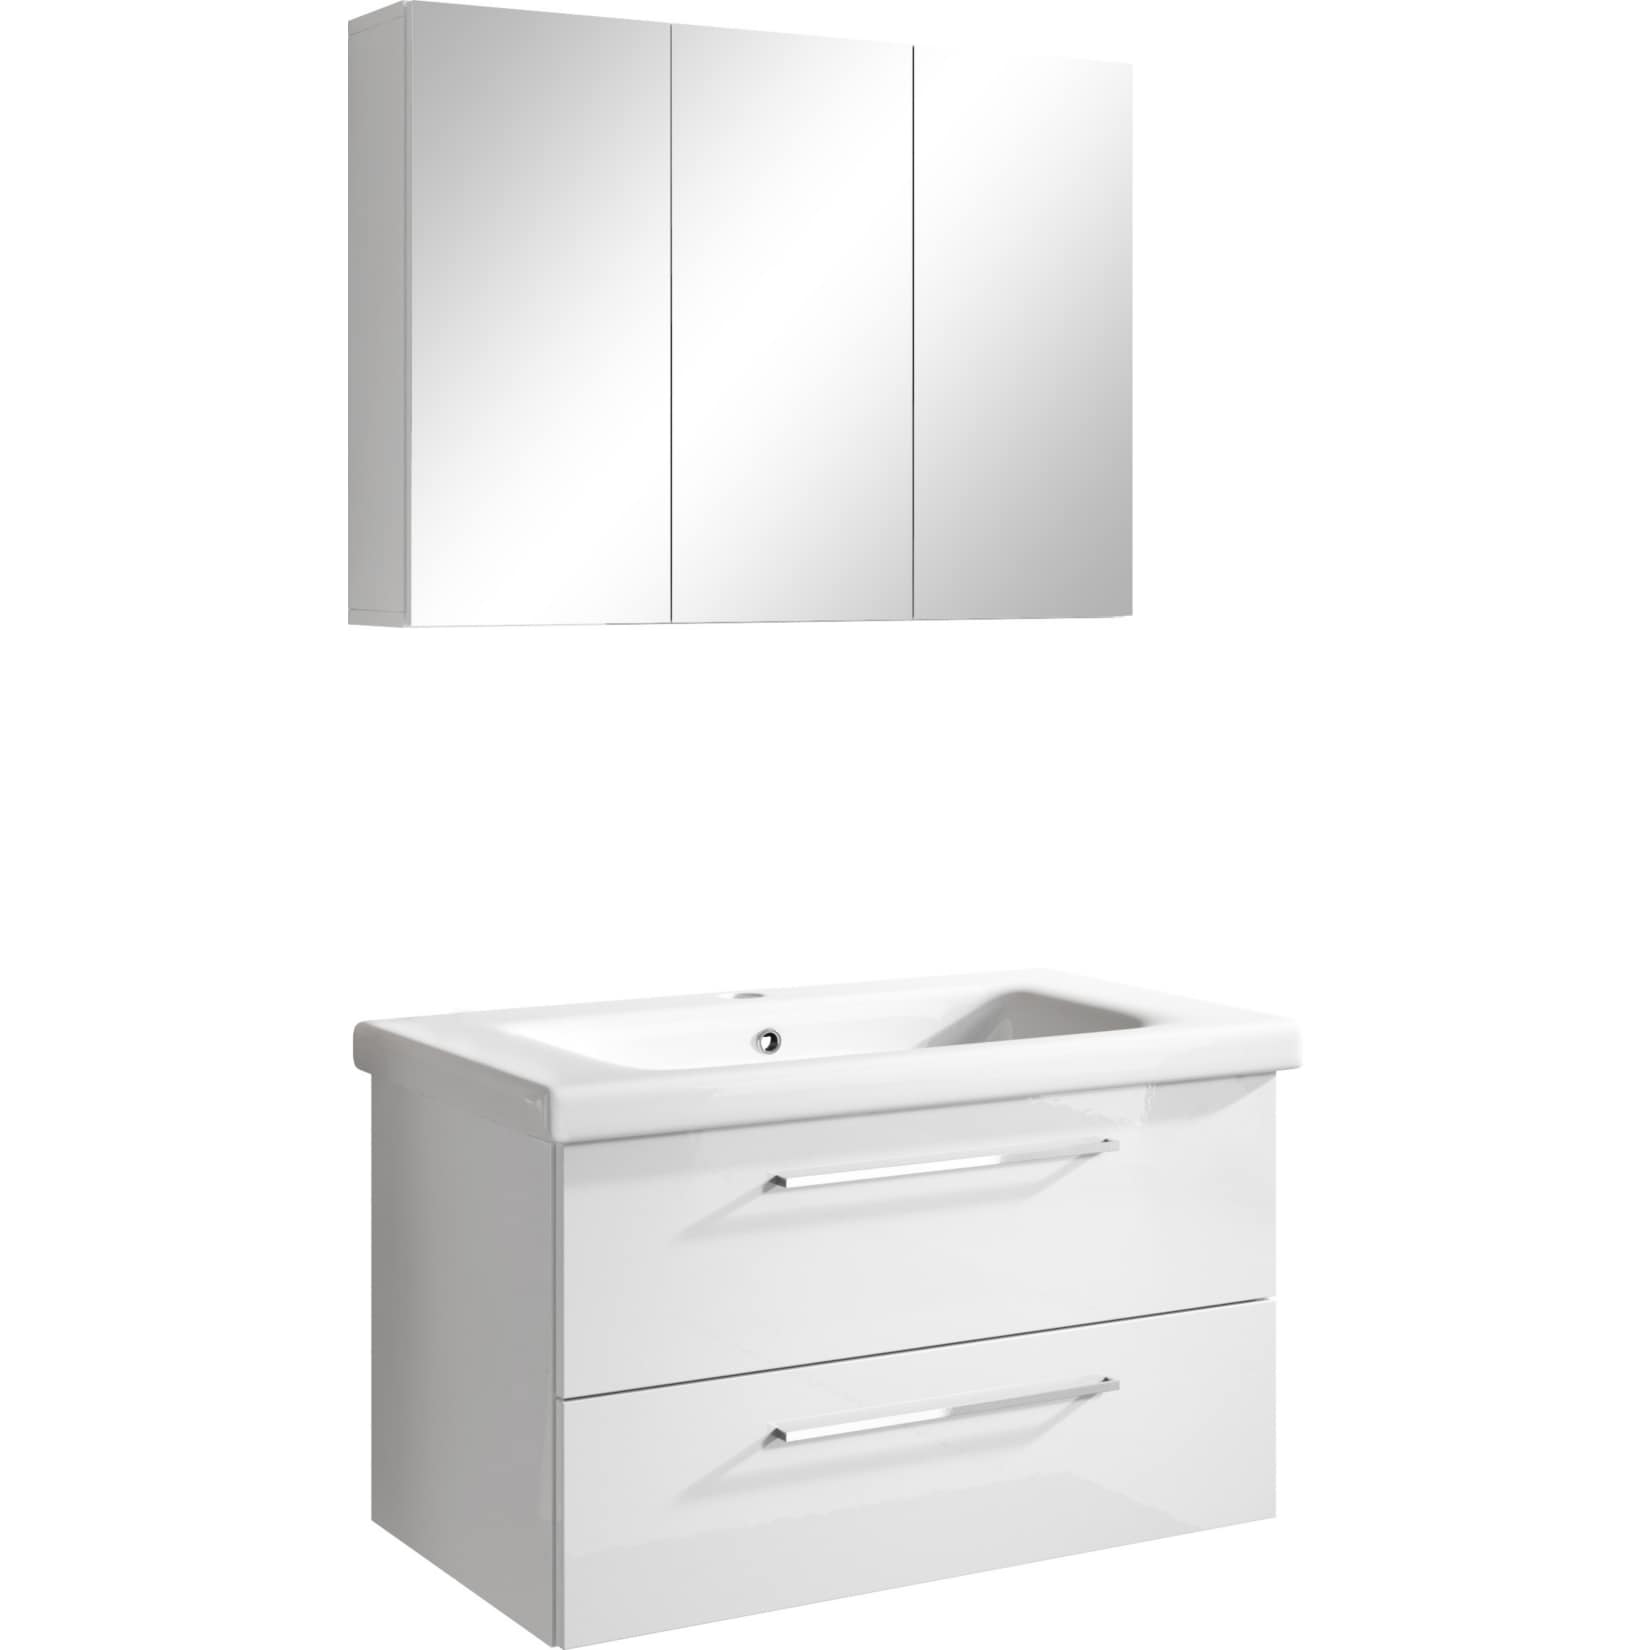 inter handels badmöbel set neapel, 2 tlg. - spiegelschrank  waschbeckenschrank 80 cm, hochglanz weiß